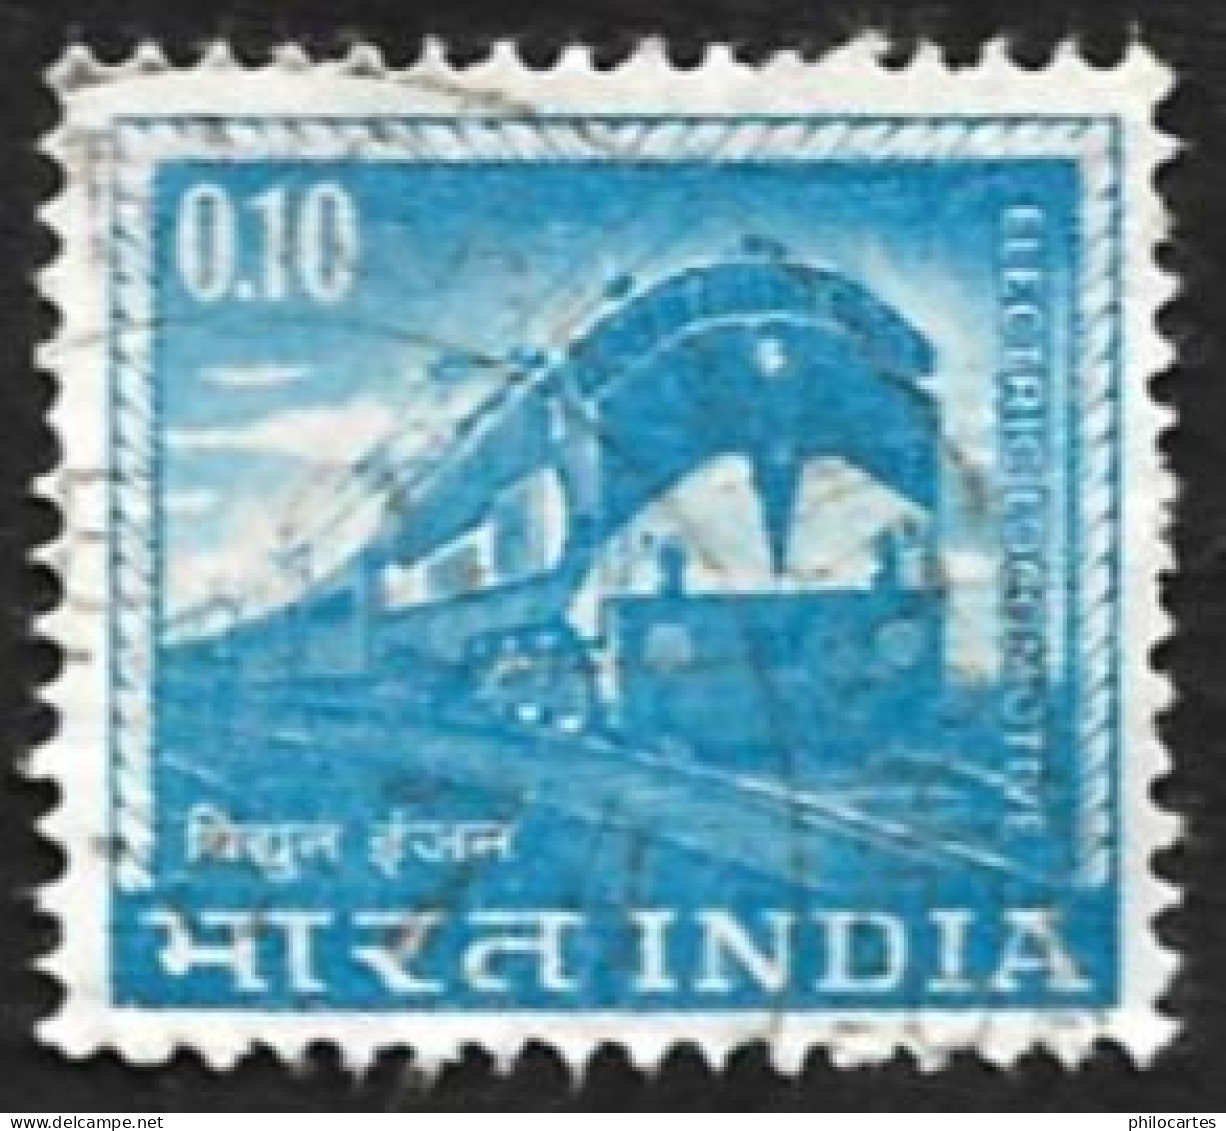 INDE   1966  -  YT 192  -  Locomotive   - Oblitéré - Used Stamps